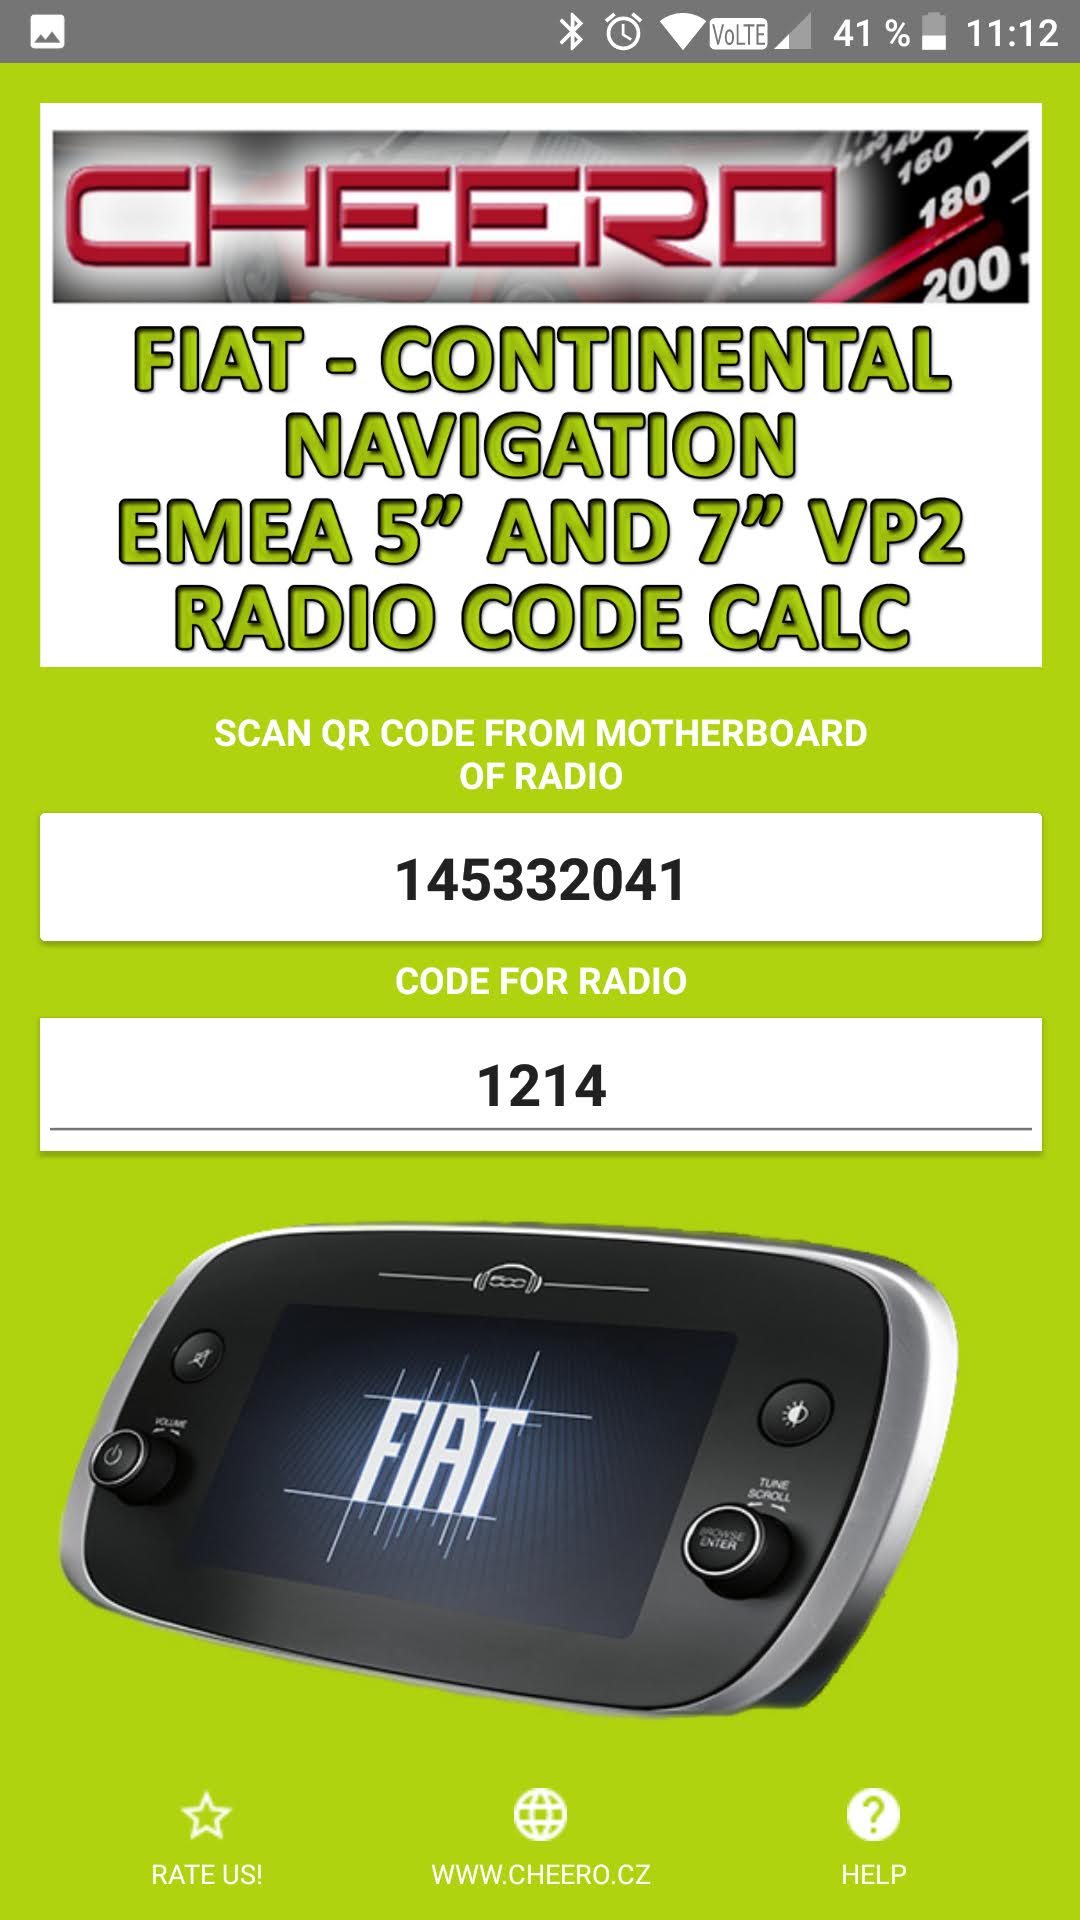 RADIO CODE FOR FIAT VP2 NAVI EMEA CONTINENTAL - FIAT 312 7in FIAT 334 7in